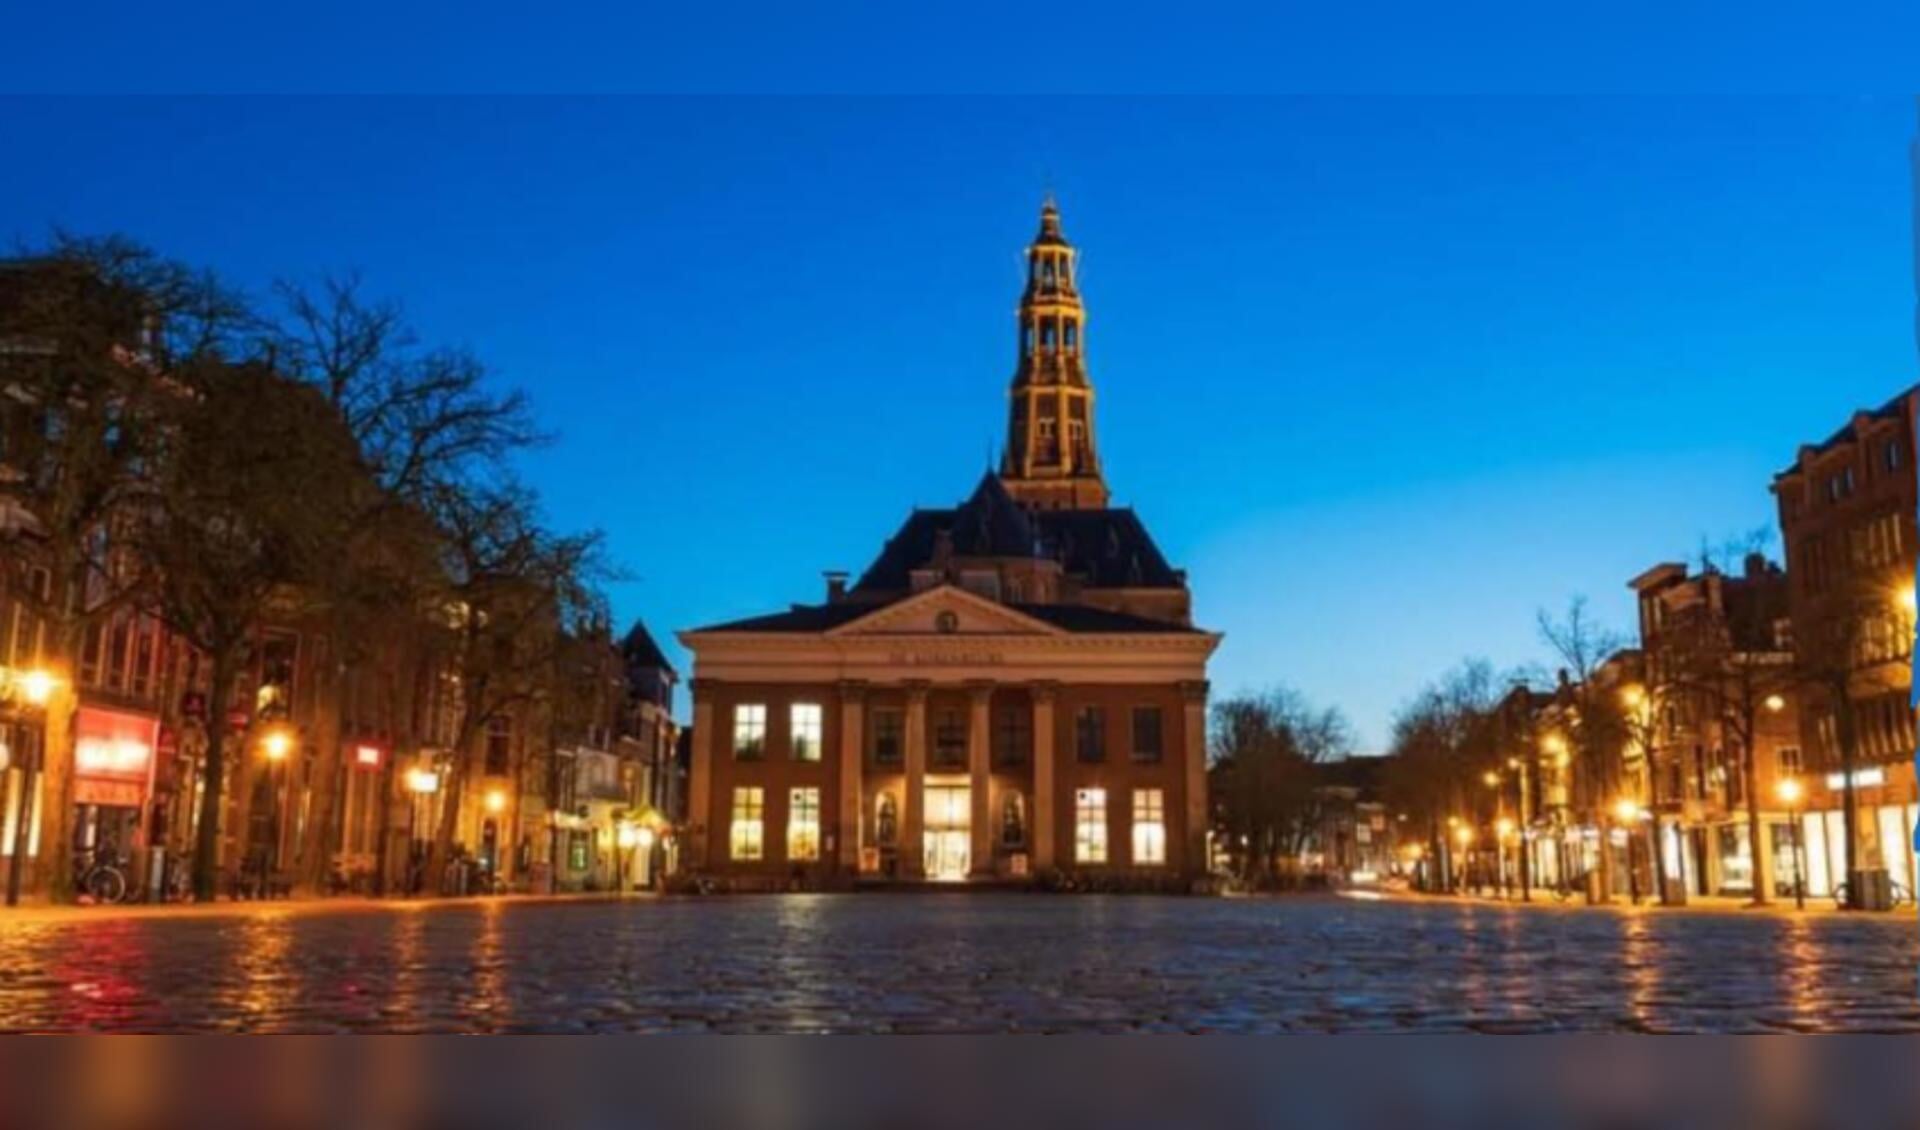 Horeca-afdeling Friesland vindt het onbegrijpelijk dat het kabinet horecabedrijven niet open laat gaan en de lockdown in de huidige vorm tot minimaal 28 april laat voortduren.